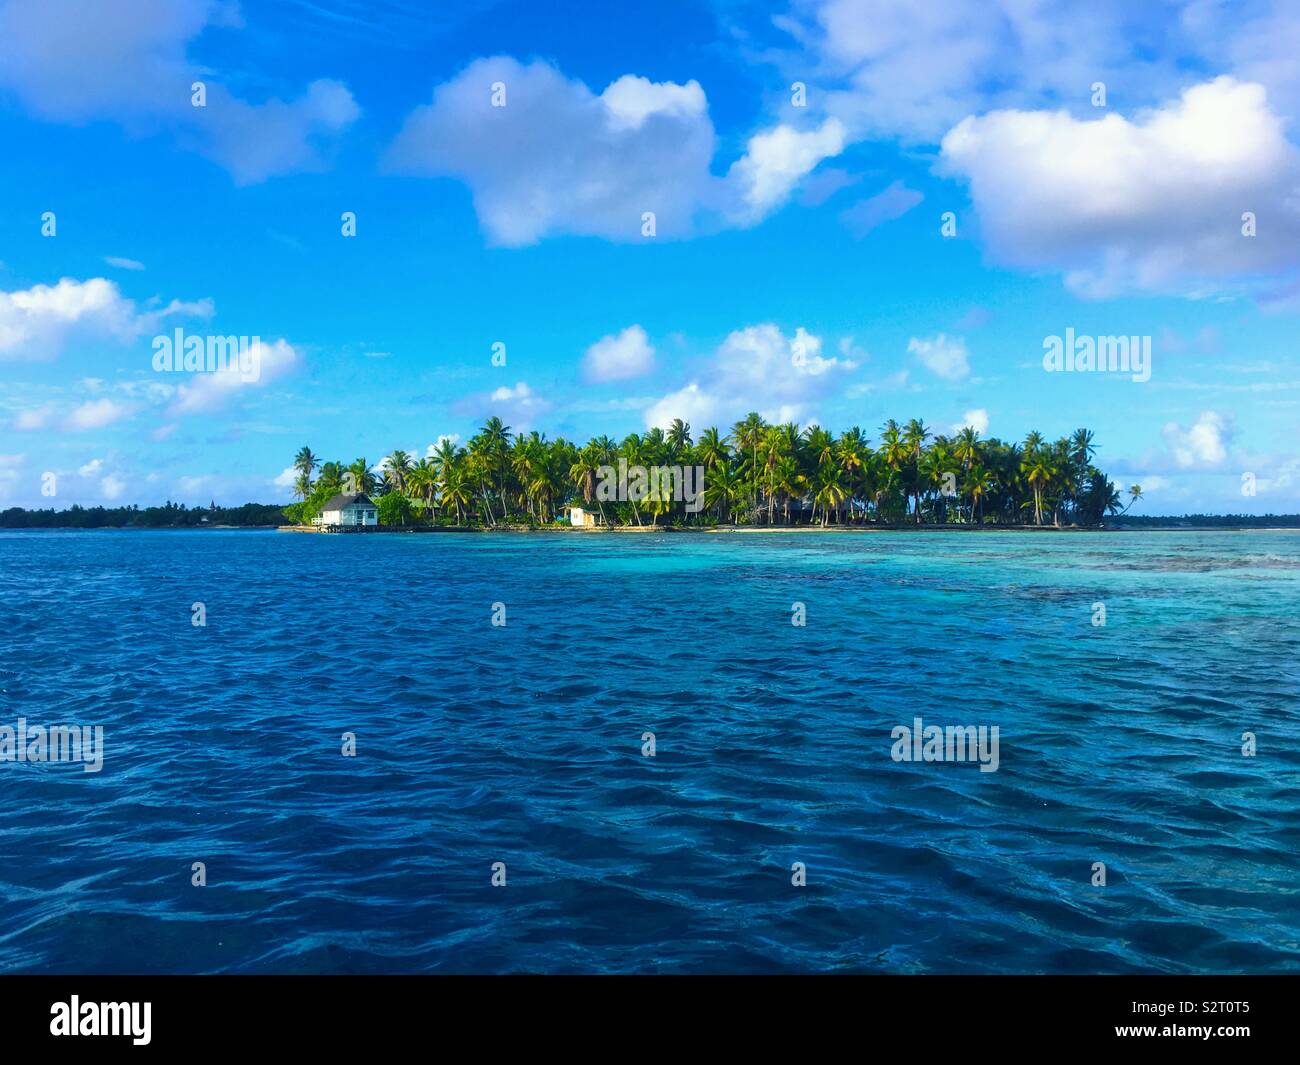 Un piccolo isolotto o motu, Blue Lagoon, Rangiroa Atoll, arcipelago delle Tuamotu Tuamotus (Isole), Polinesia Francese Foto Stock